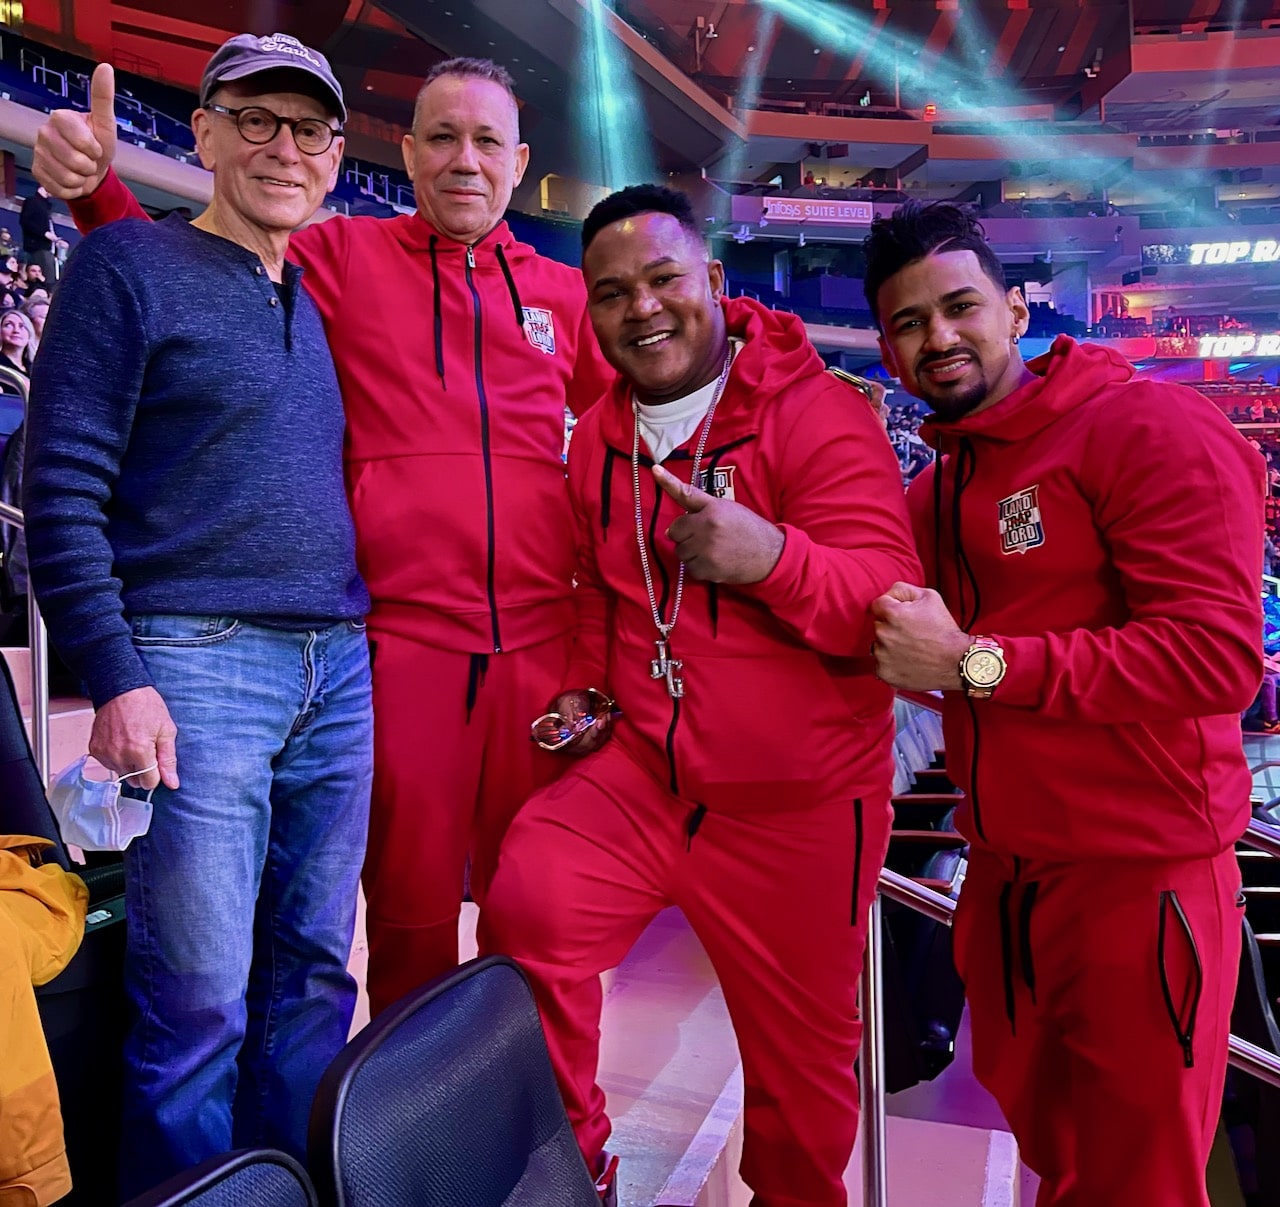 Nick Taylor, Pablo Valdez,  Joel and fighter at Madison Square Garden 